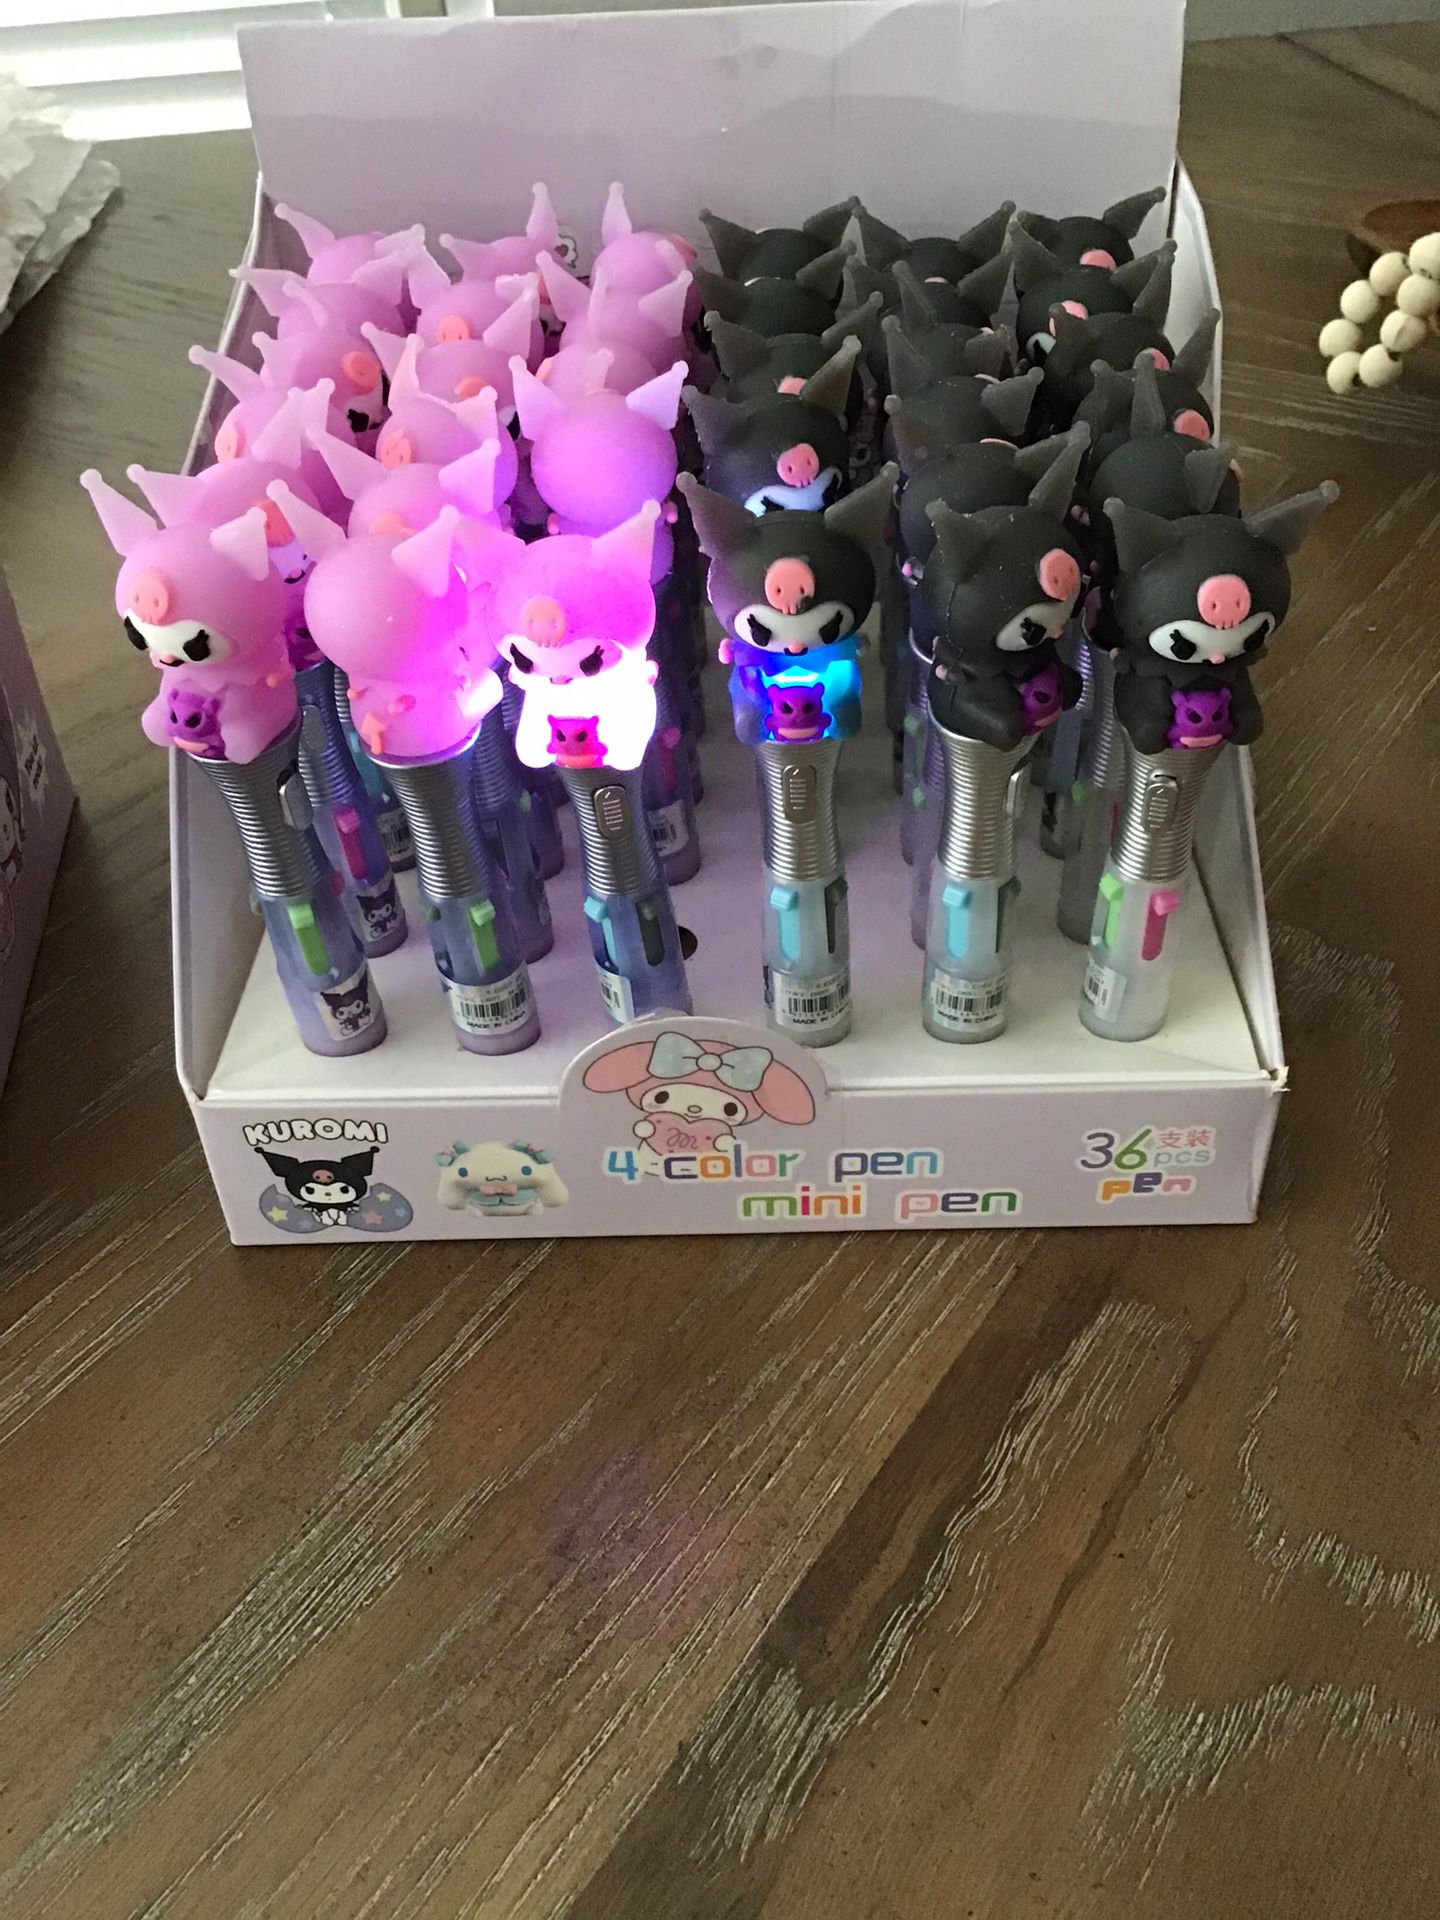 Kuromi Multi Color Light Up Pens $5 Each